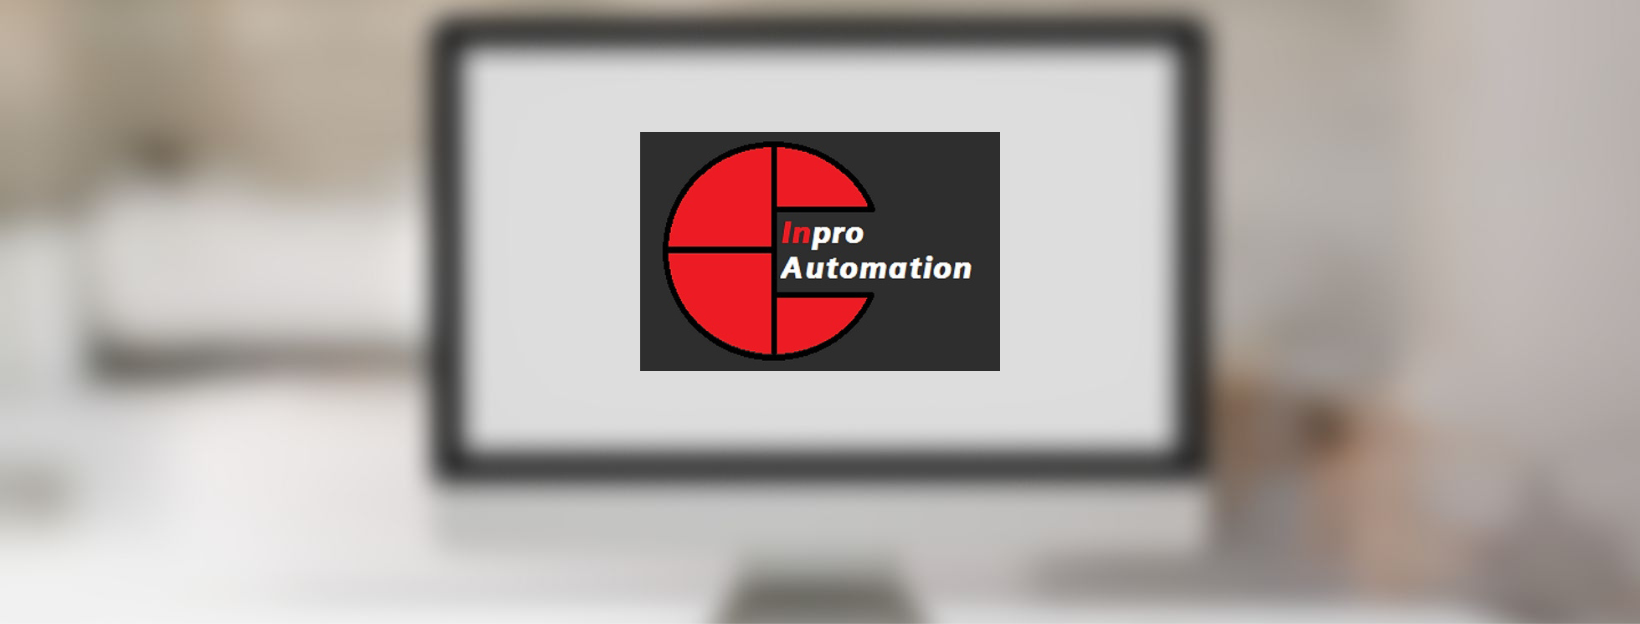 Nova pàgina web per a Inpro Automation